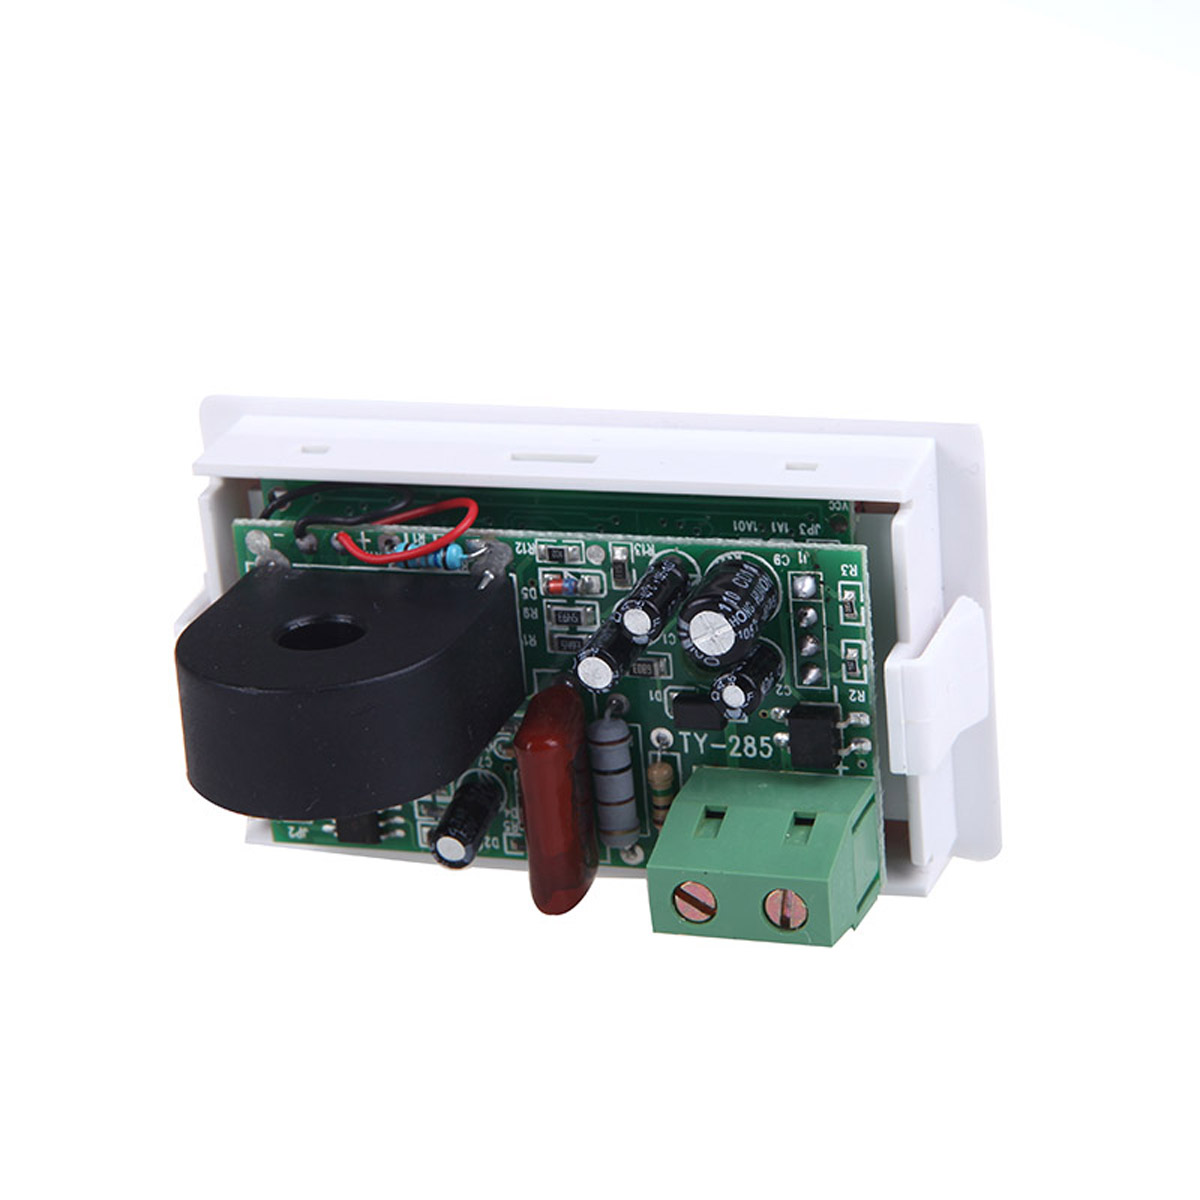 D85-2041-LCD-Display-Digital-AC100-300V-50A-Ammeter-Voltmeter-Meter-Tester-Amp-Panel-Meter-With-Blue-1443865